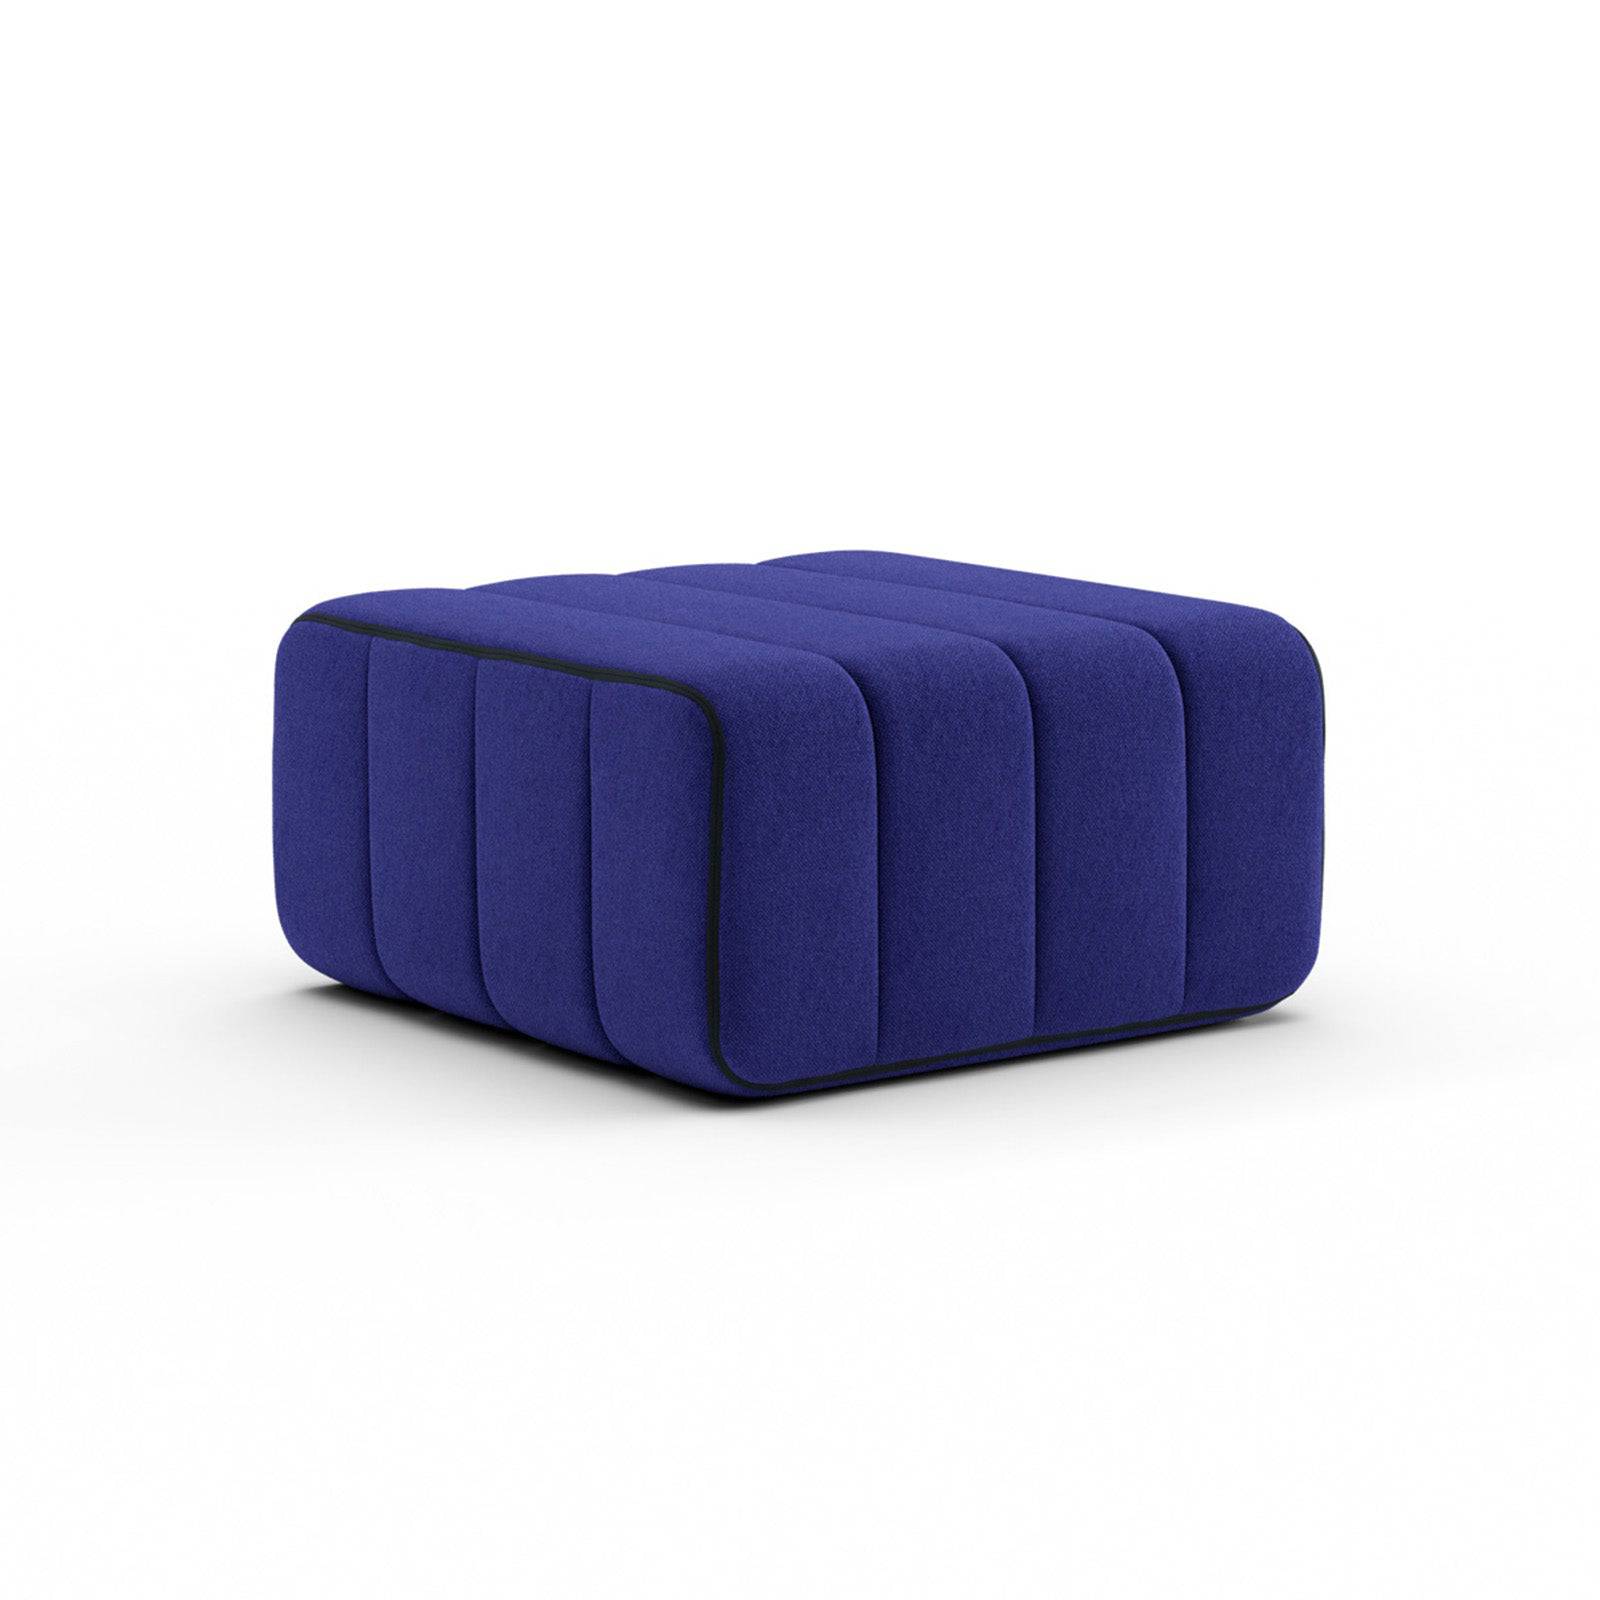 Système de canapé Curt - Jet Blue Violett